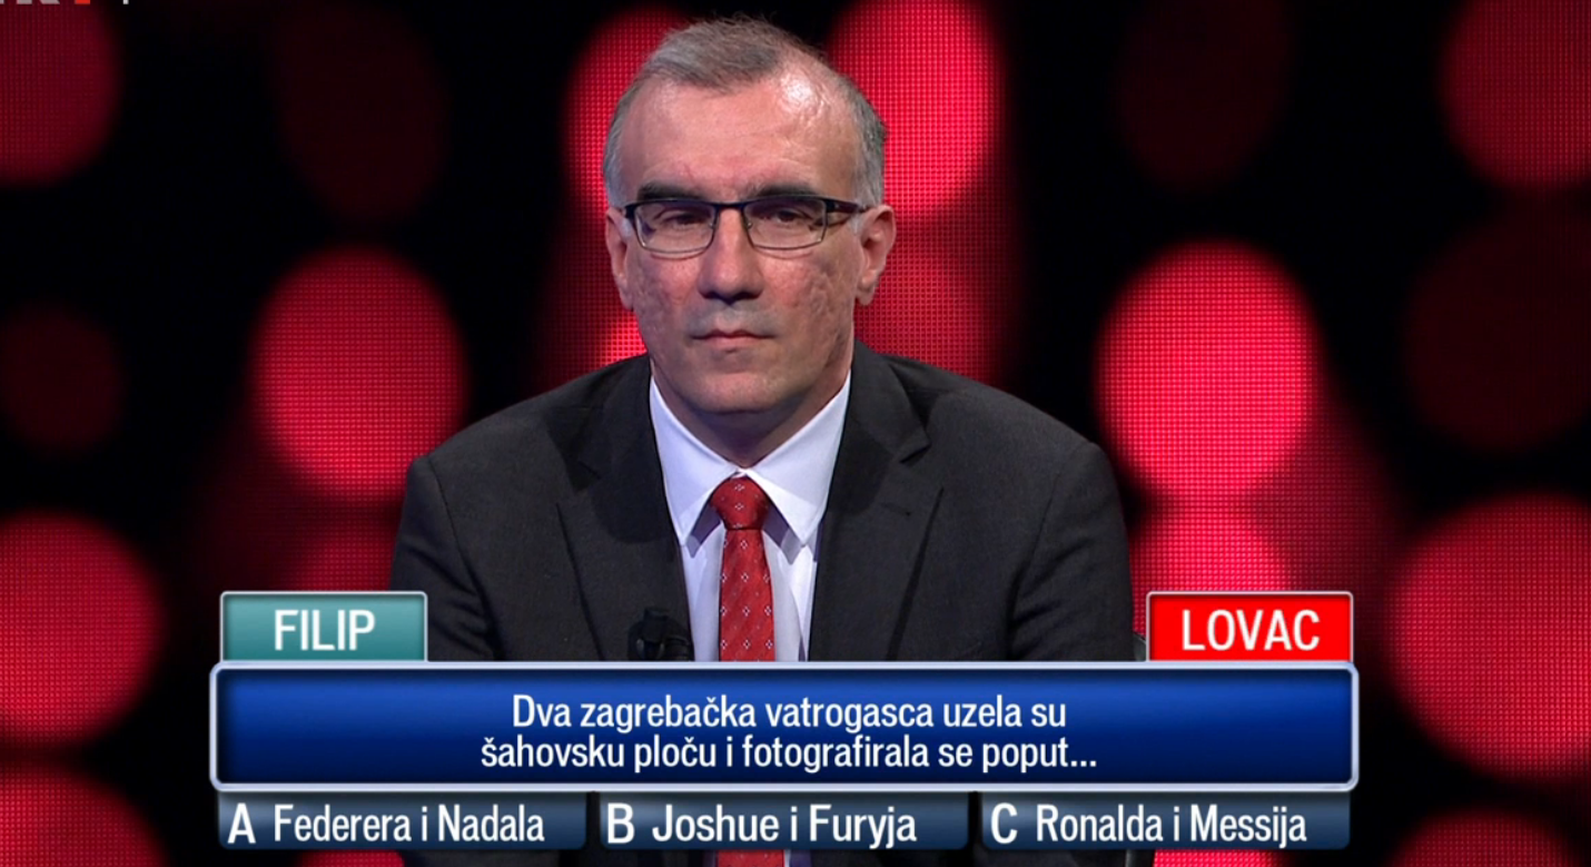 Vukorepa u 'Potjeri' komentirao zagrebačke vatrogasce, a oni mu poručili: 'Nema pojma...'